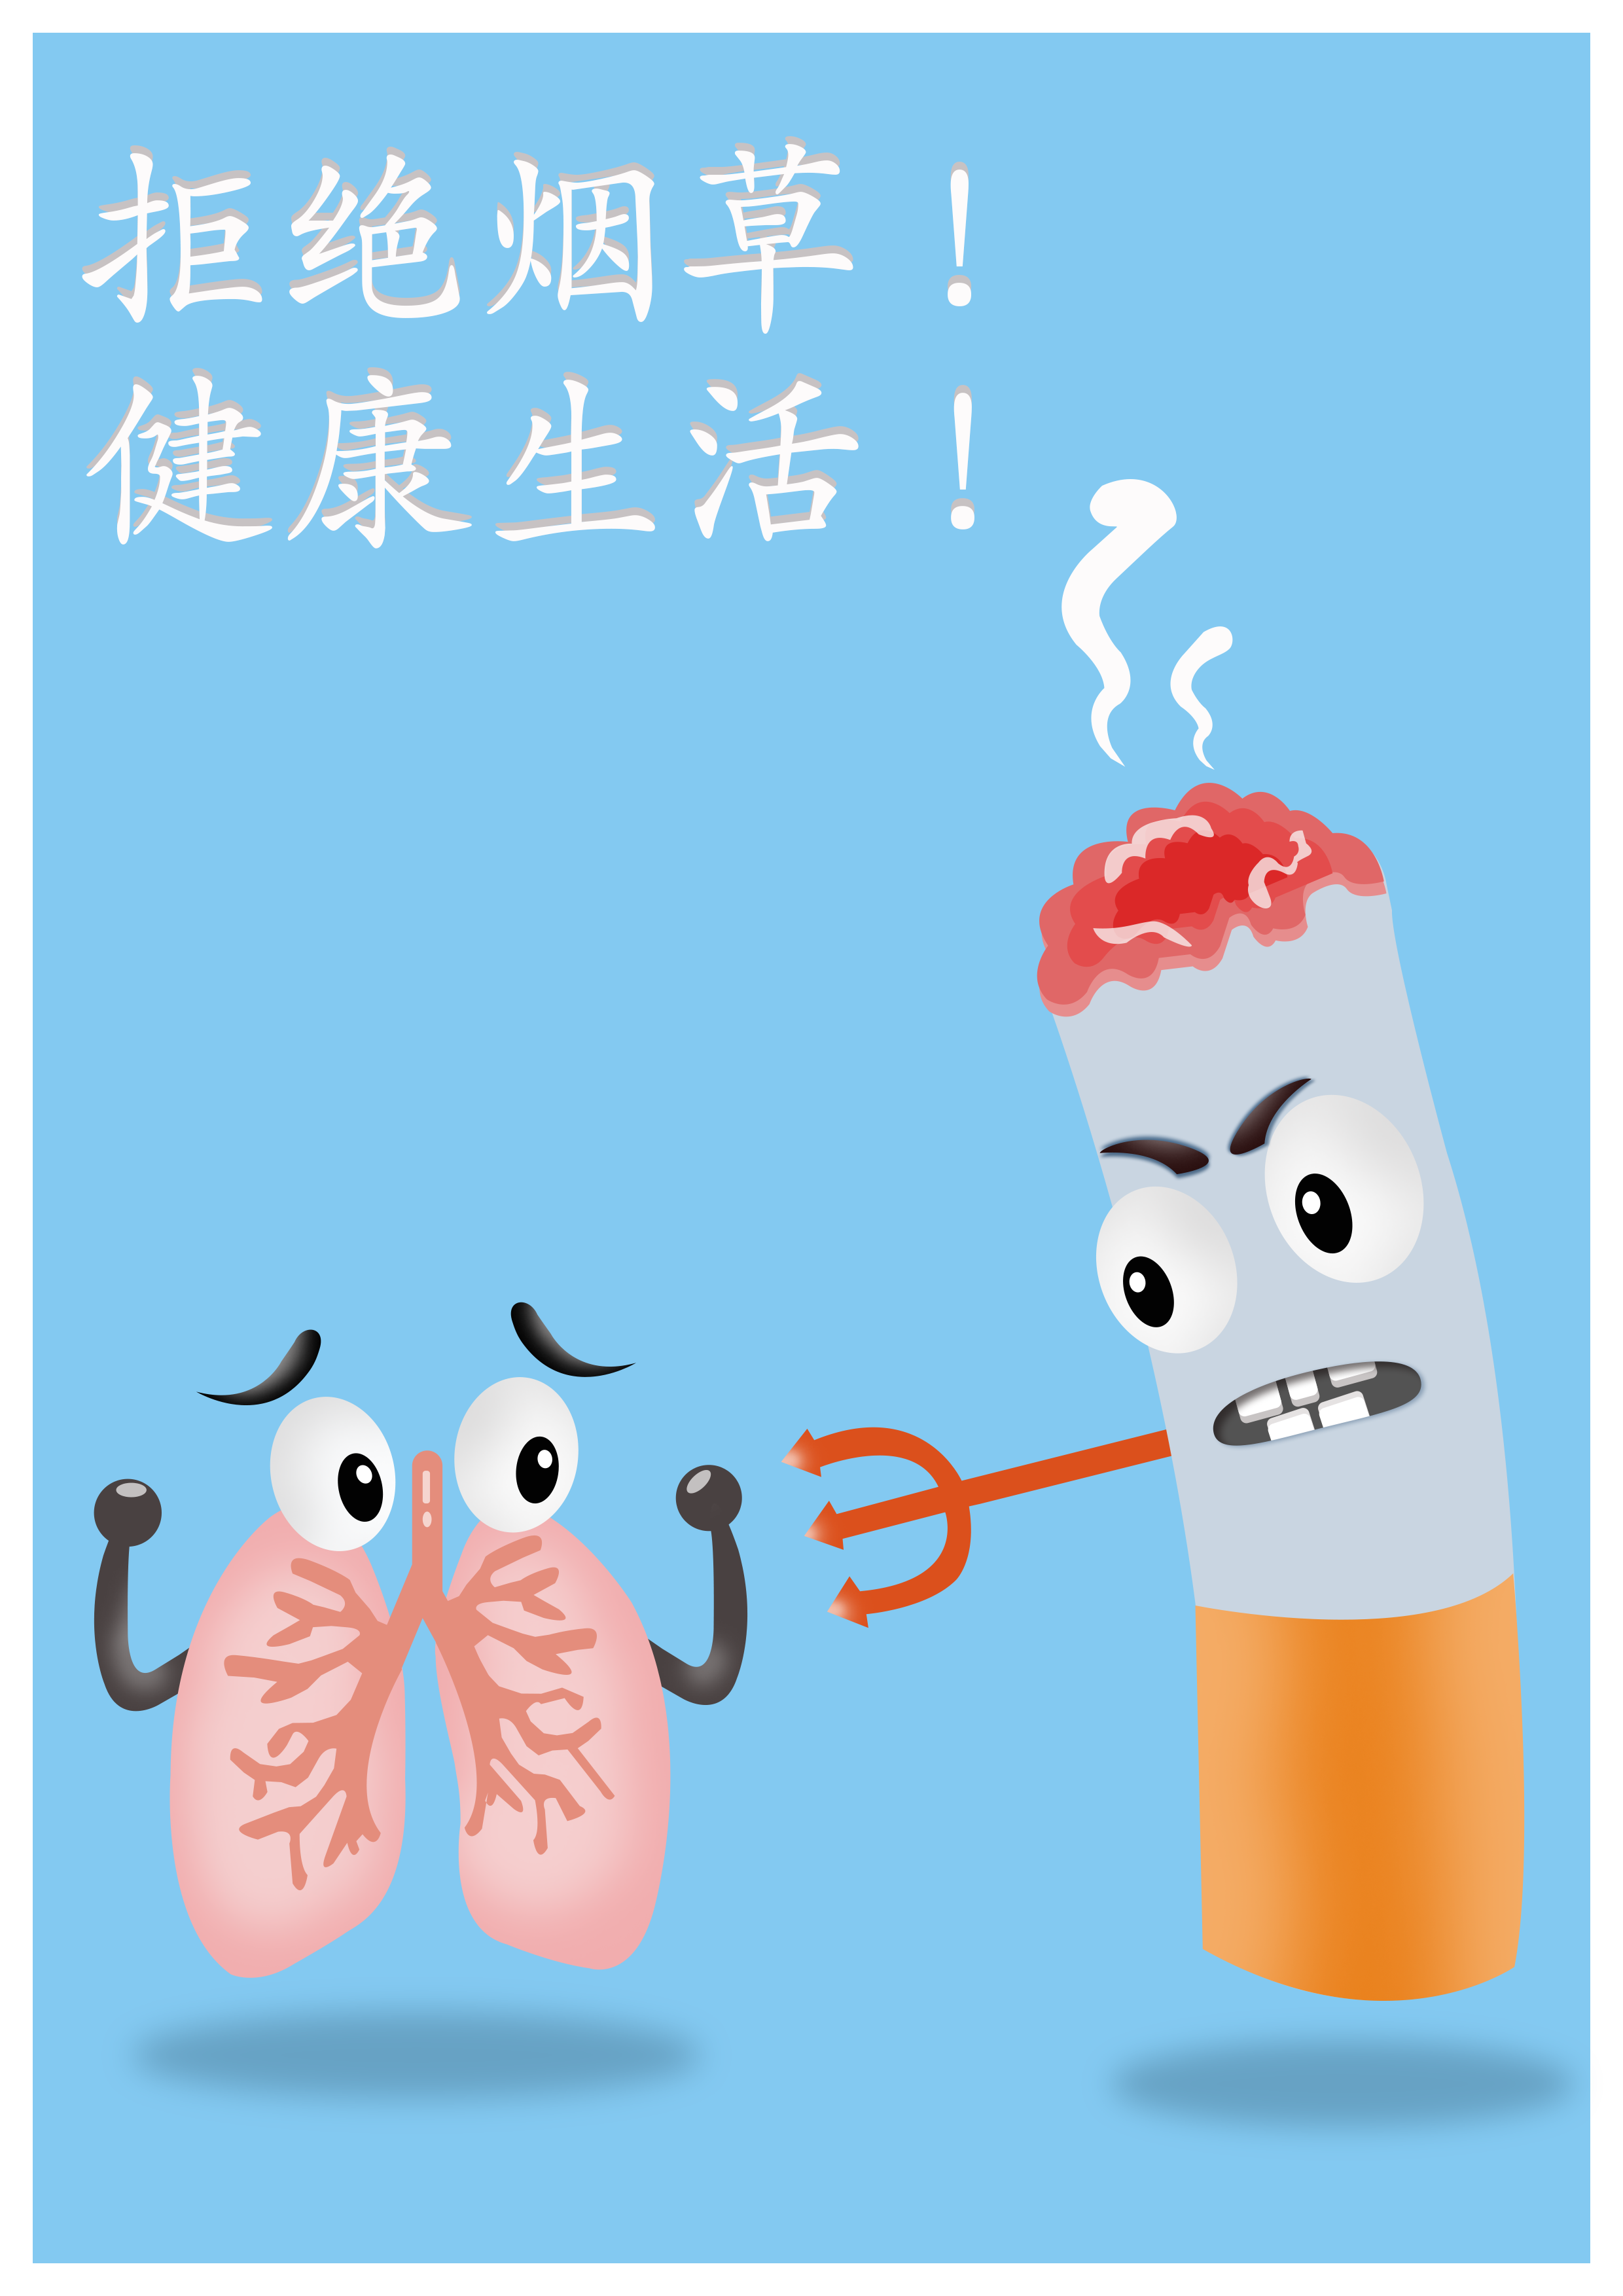 烟动图图片-烟动图素材免费下载-包图网